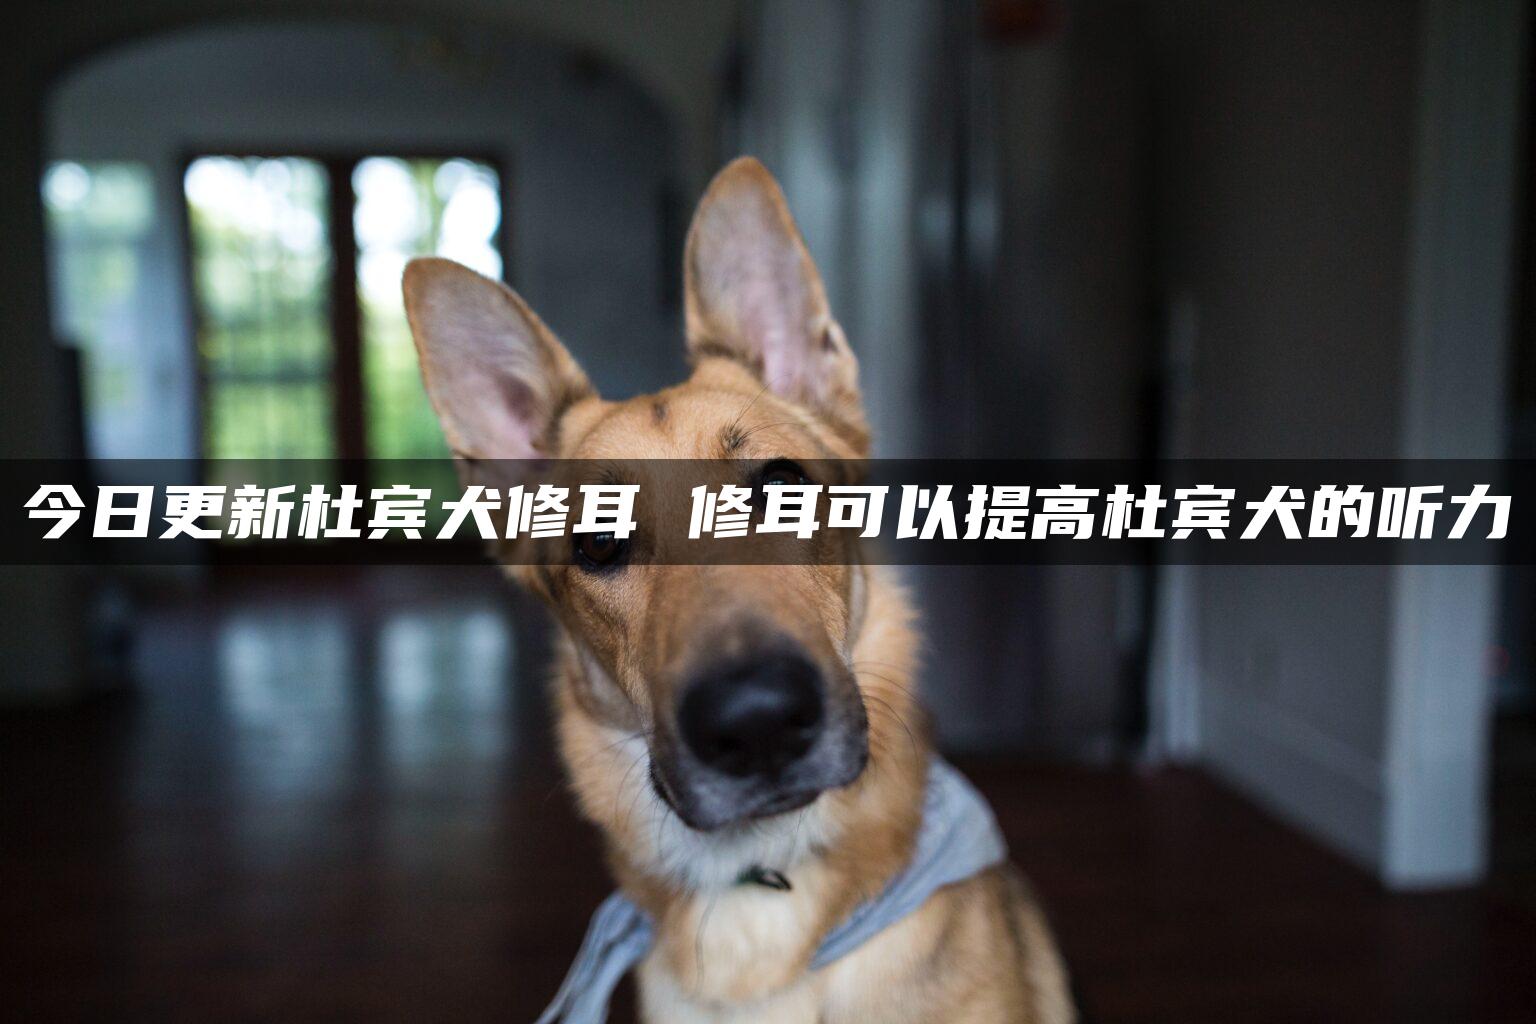 今日更新杜宾犬修耳 修耳可以提高杜宾犬的听力